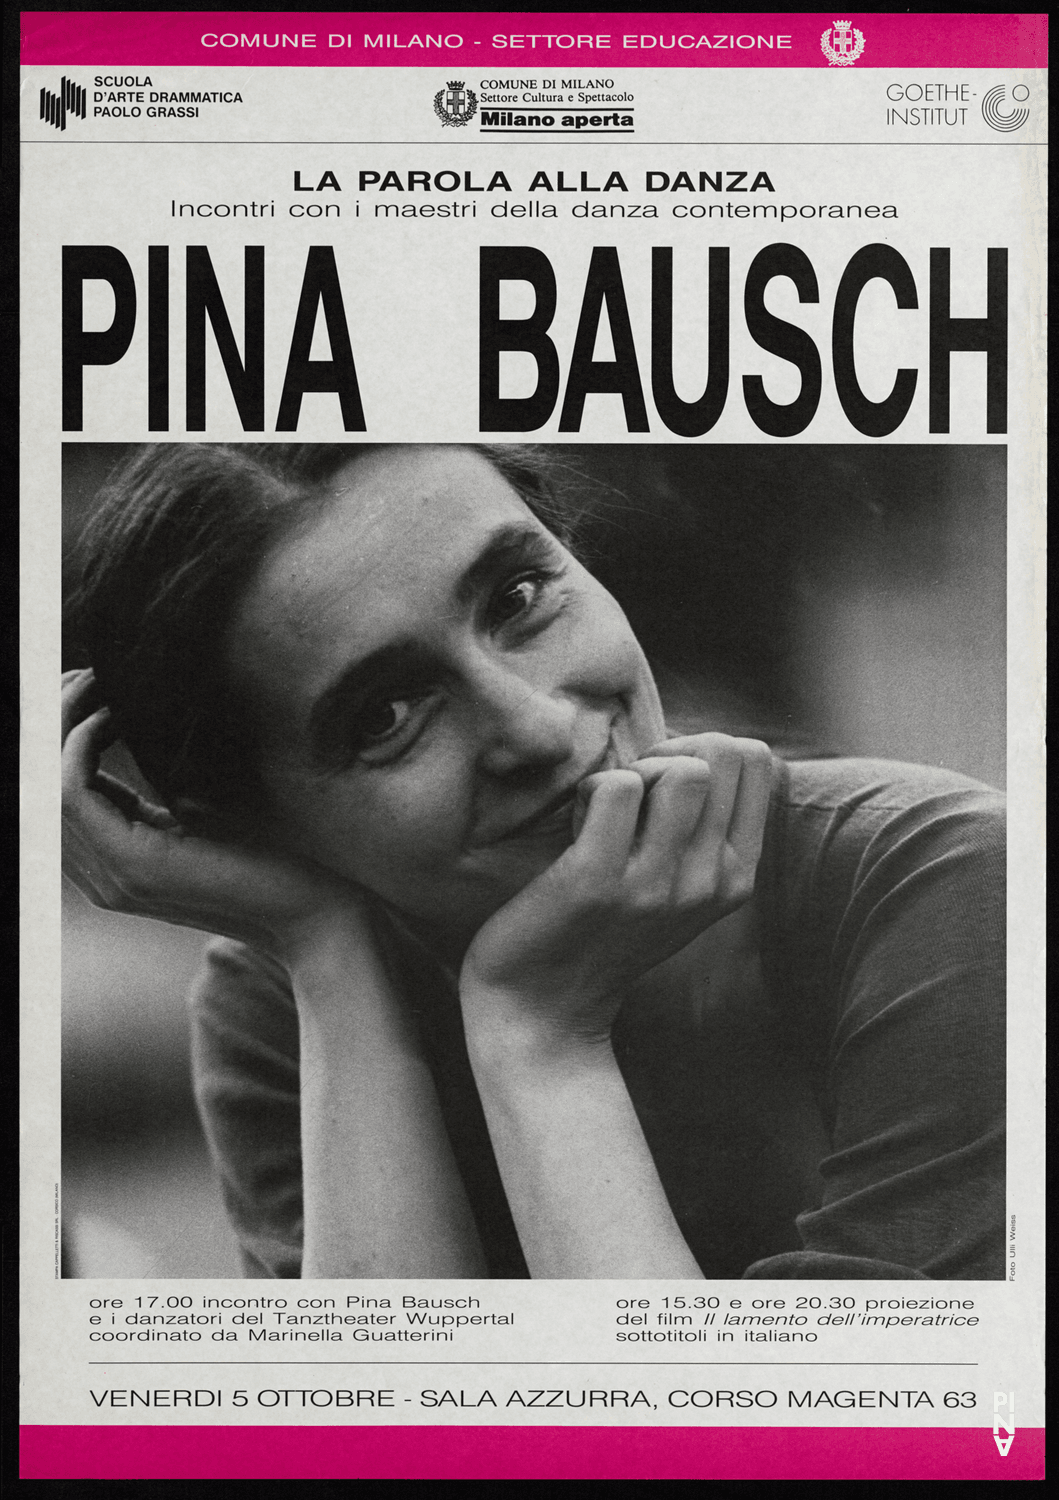 Plakat: Ulli Weiss © Pina Bausch Foundation